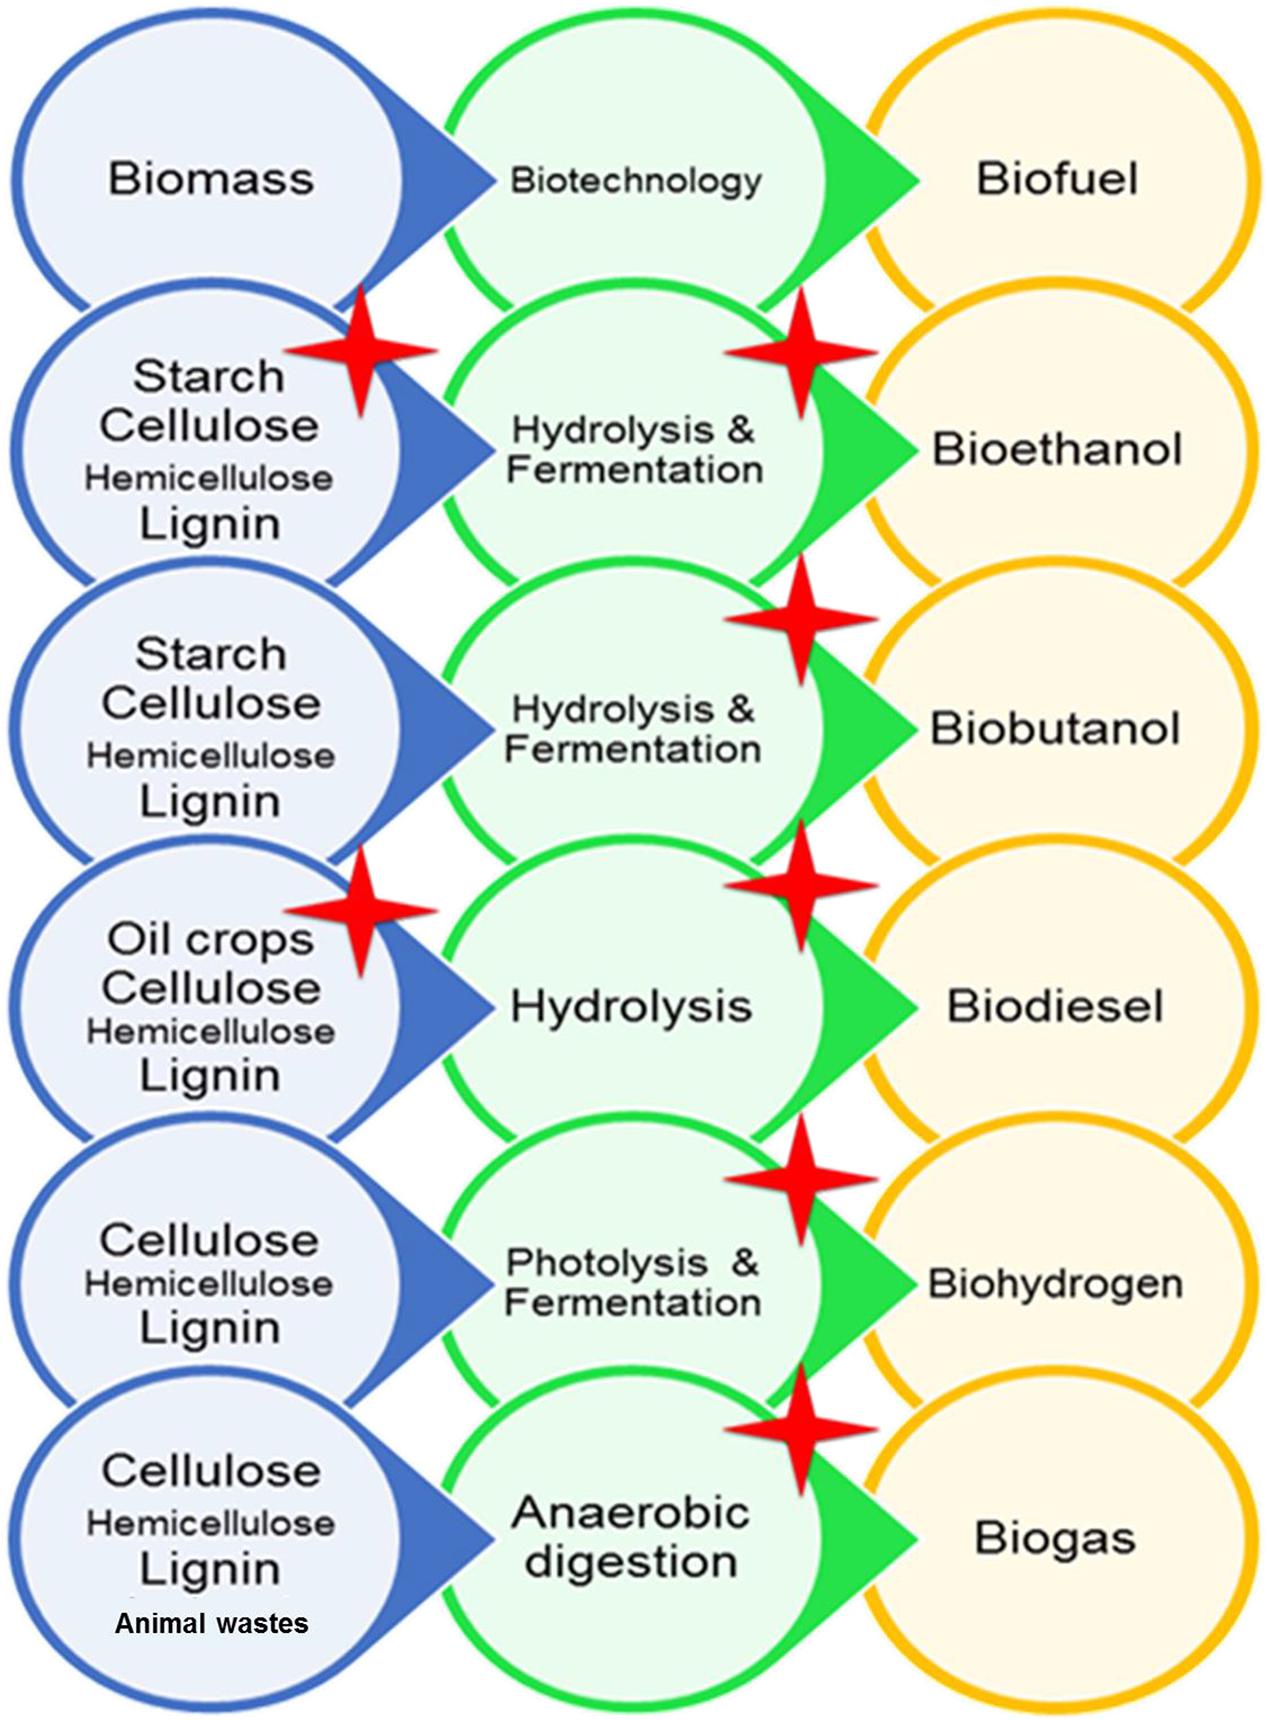 Bioethanol vs Biodiesel